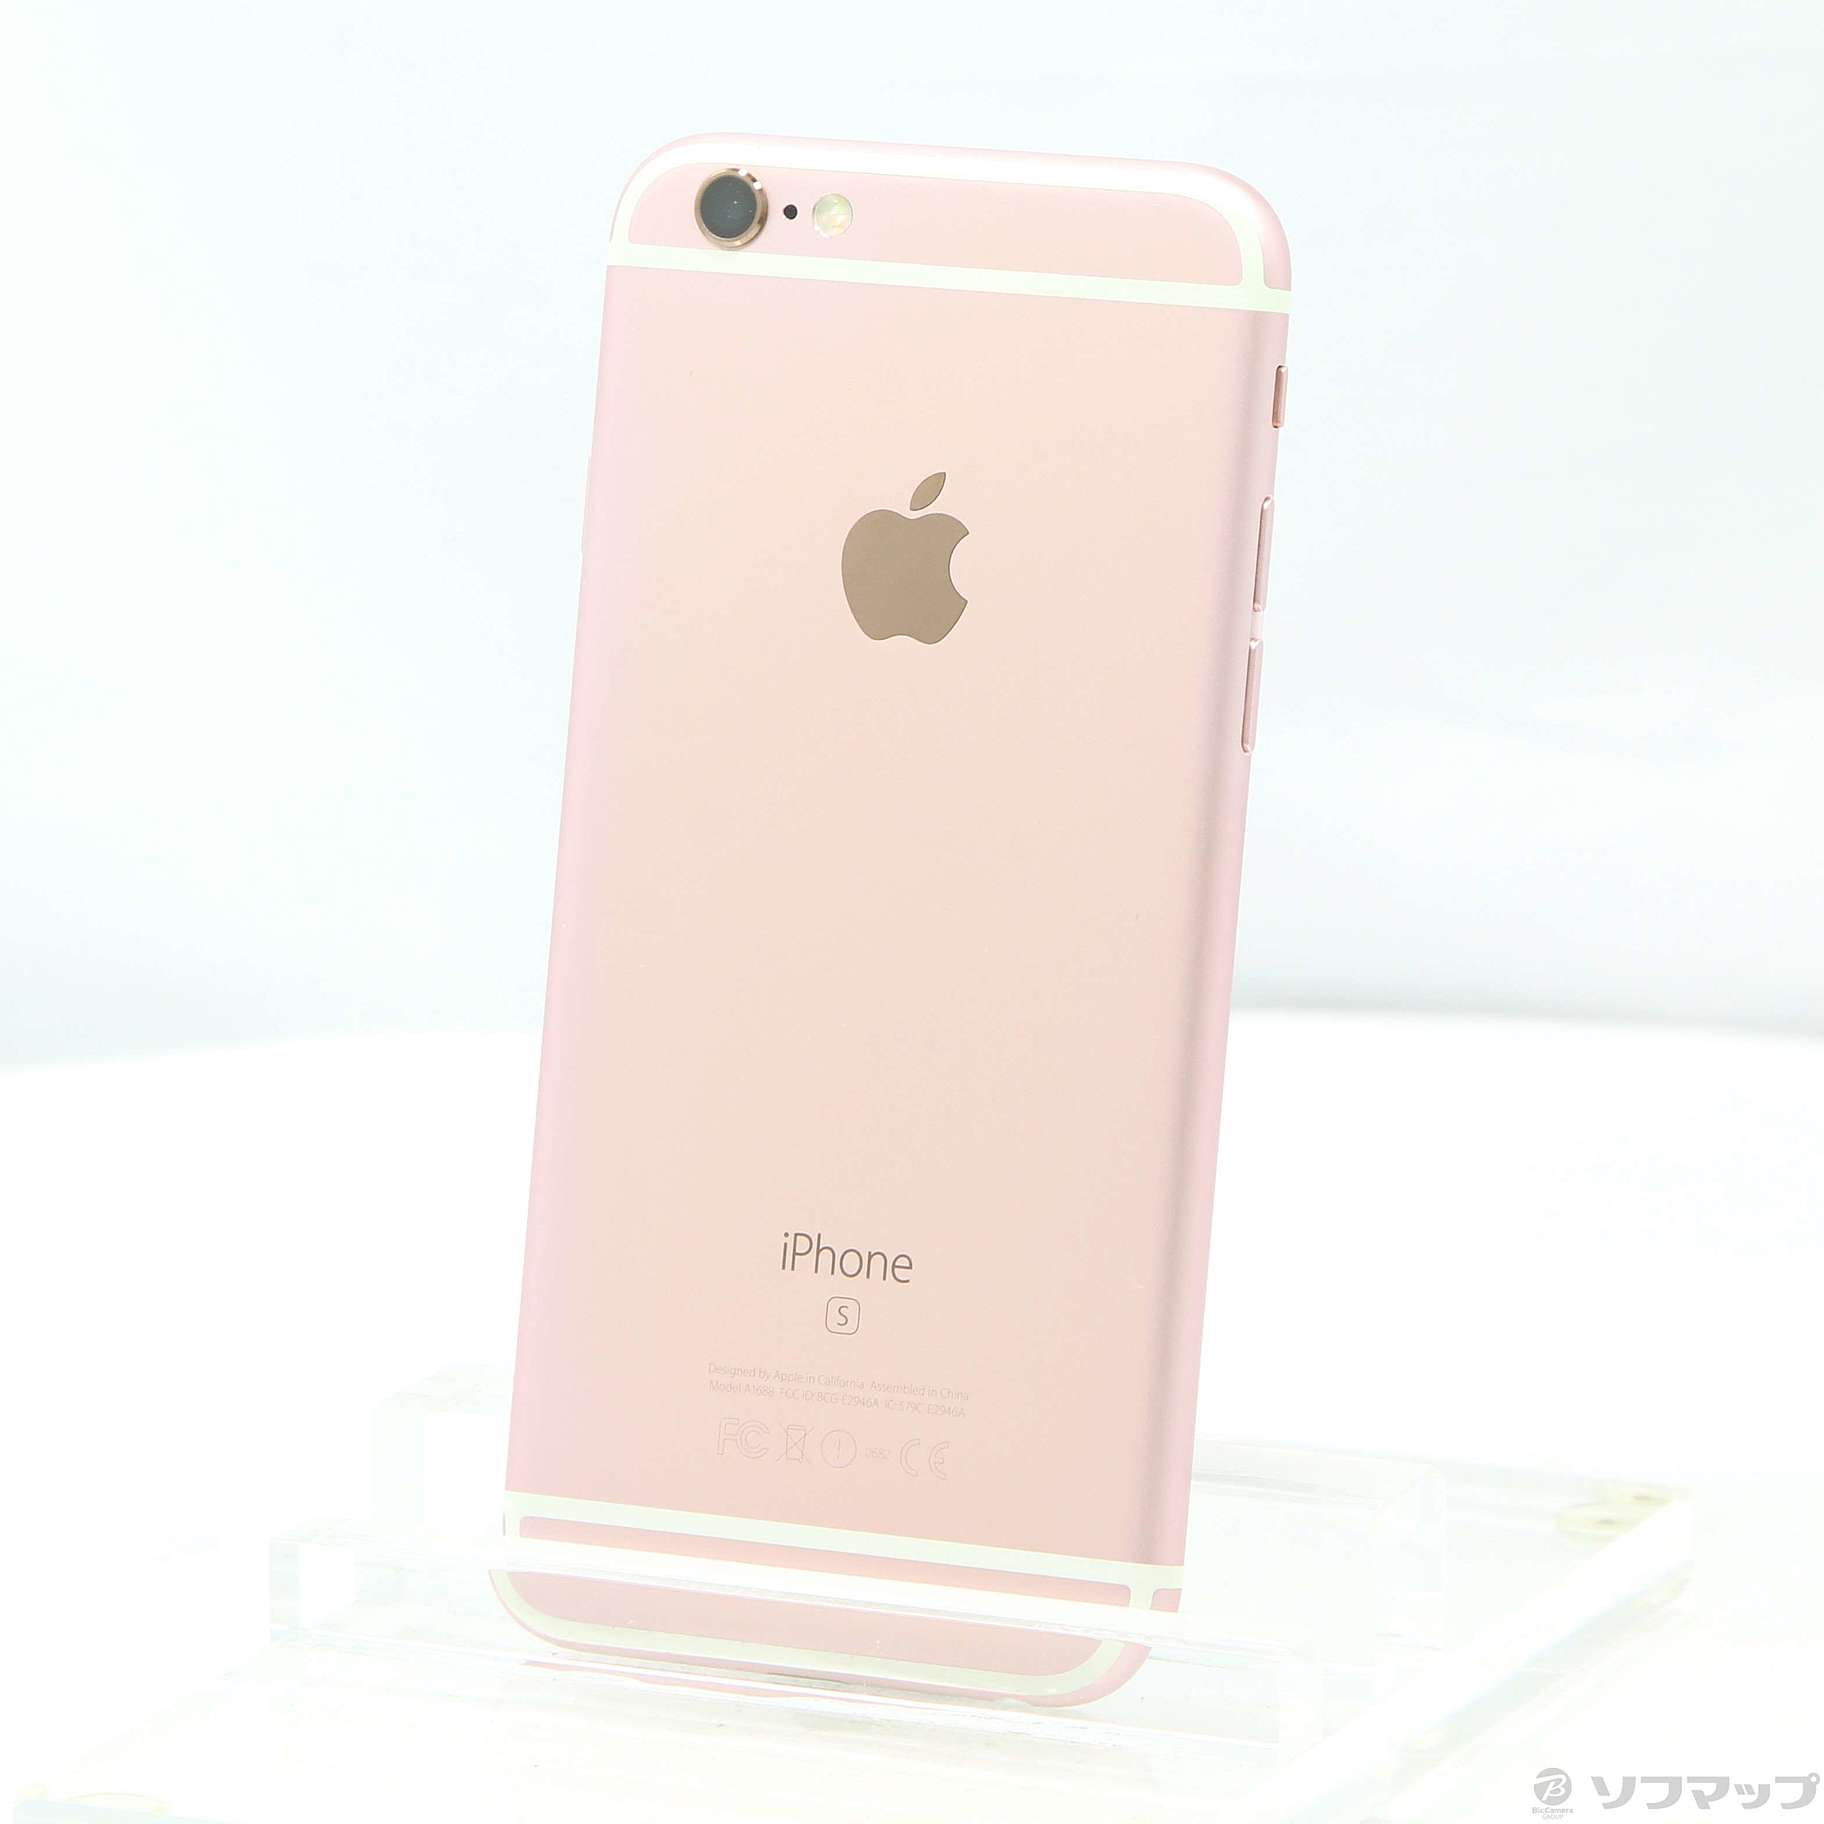 iPhone 6s ローズゴールド 64GB SIMフリー